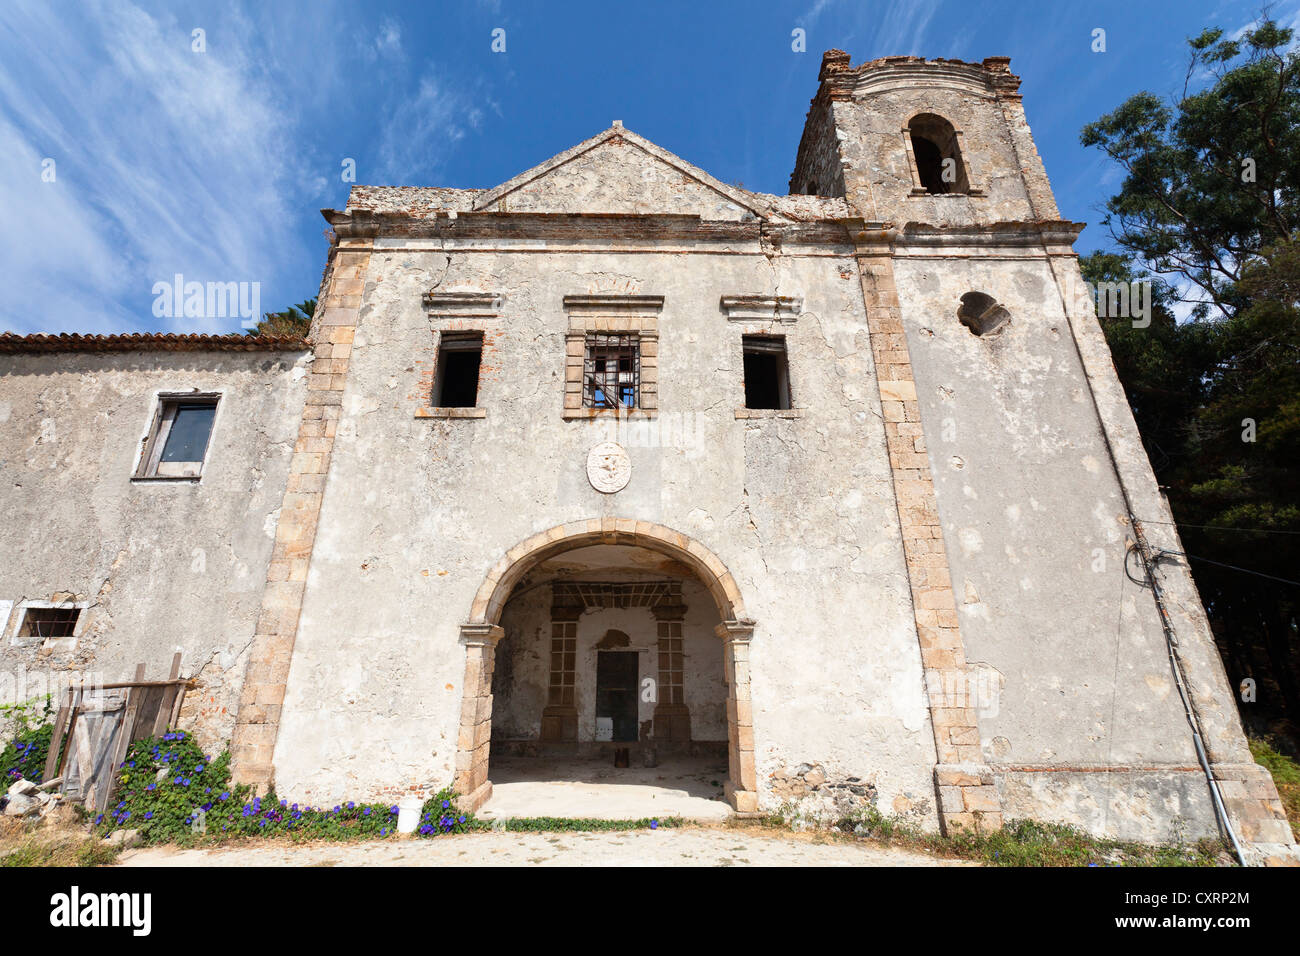 Ruins of the Convento de Nossa Senhora do Desterro, abbey in Monchique, Algarve, Portugal, Europe Stock Photo